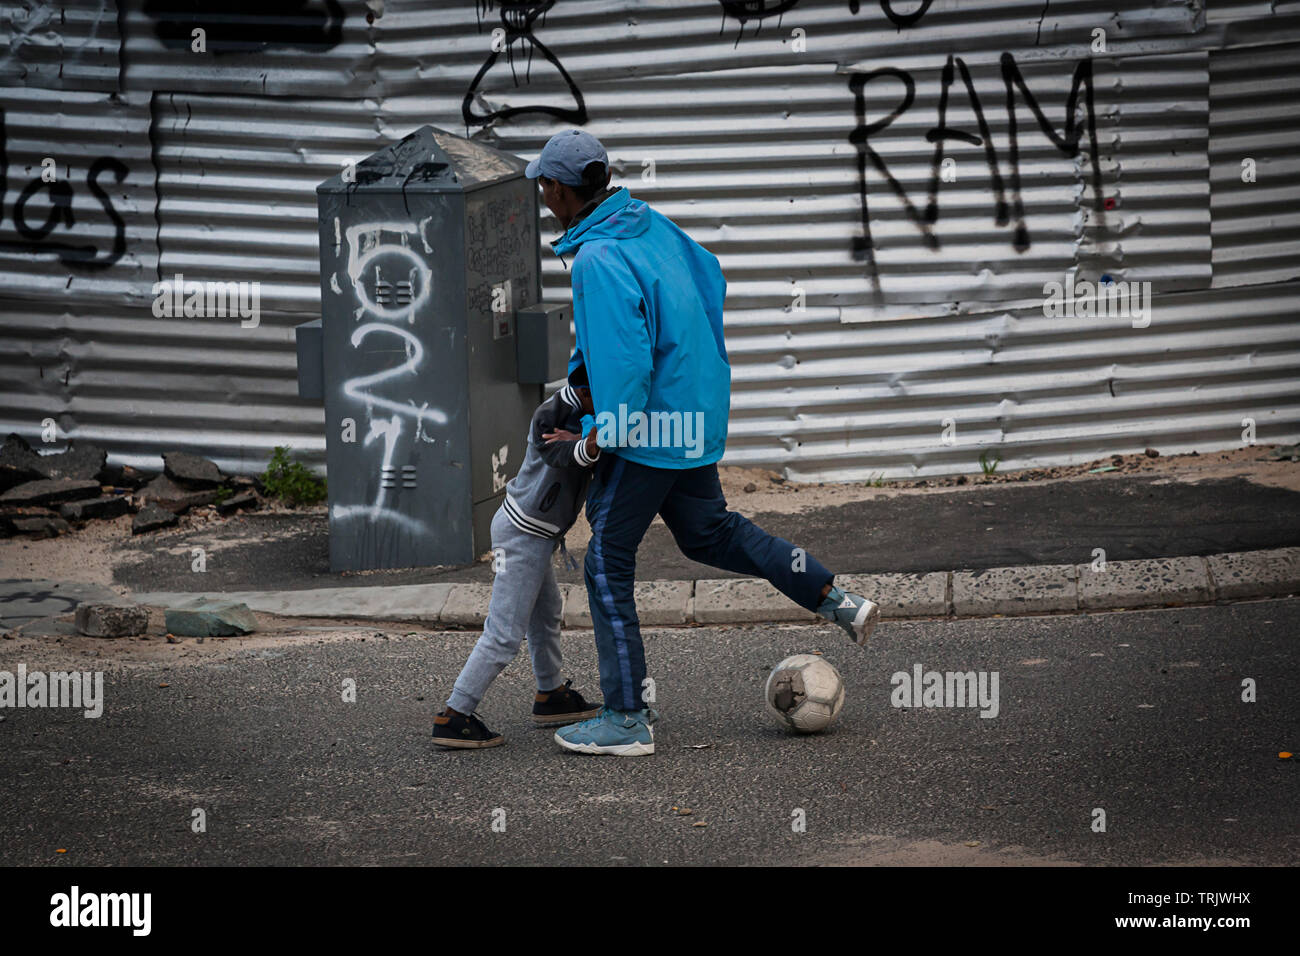 Dos muchachos jugando con una pelota de fútbol en las calles de una barriada en África Foto de stock